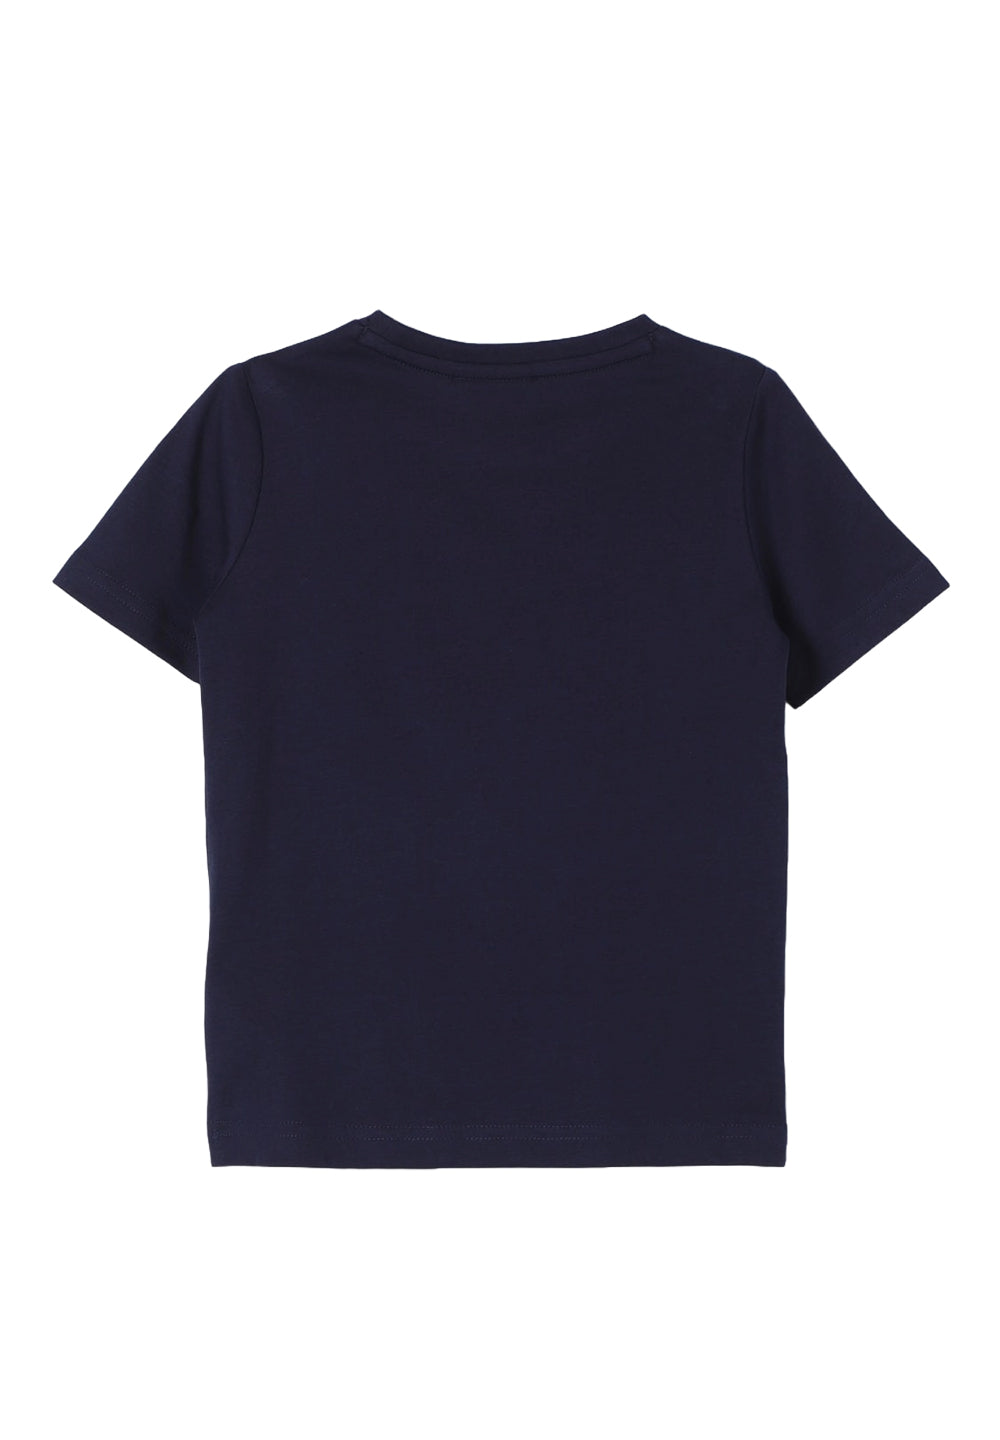 Blue t-shirt for boy